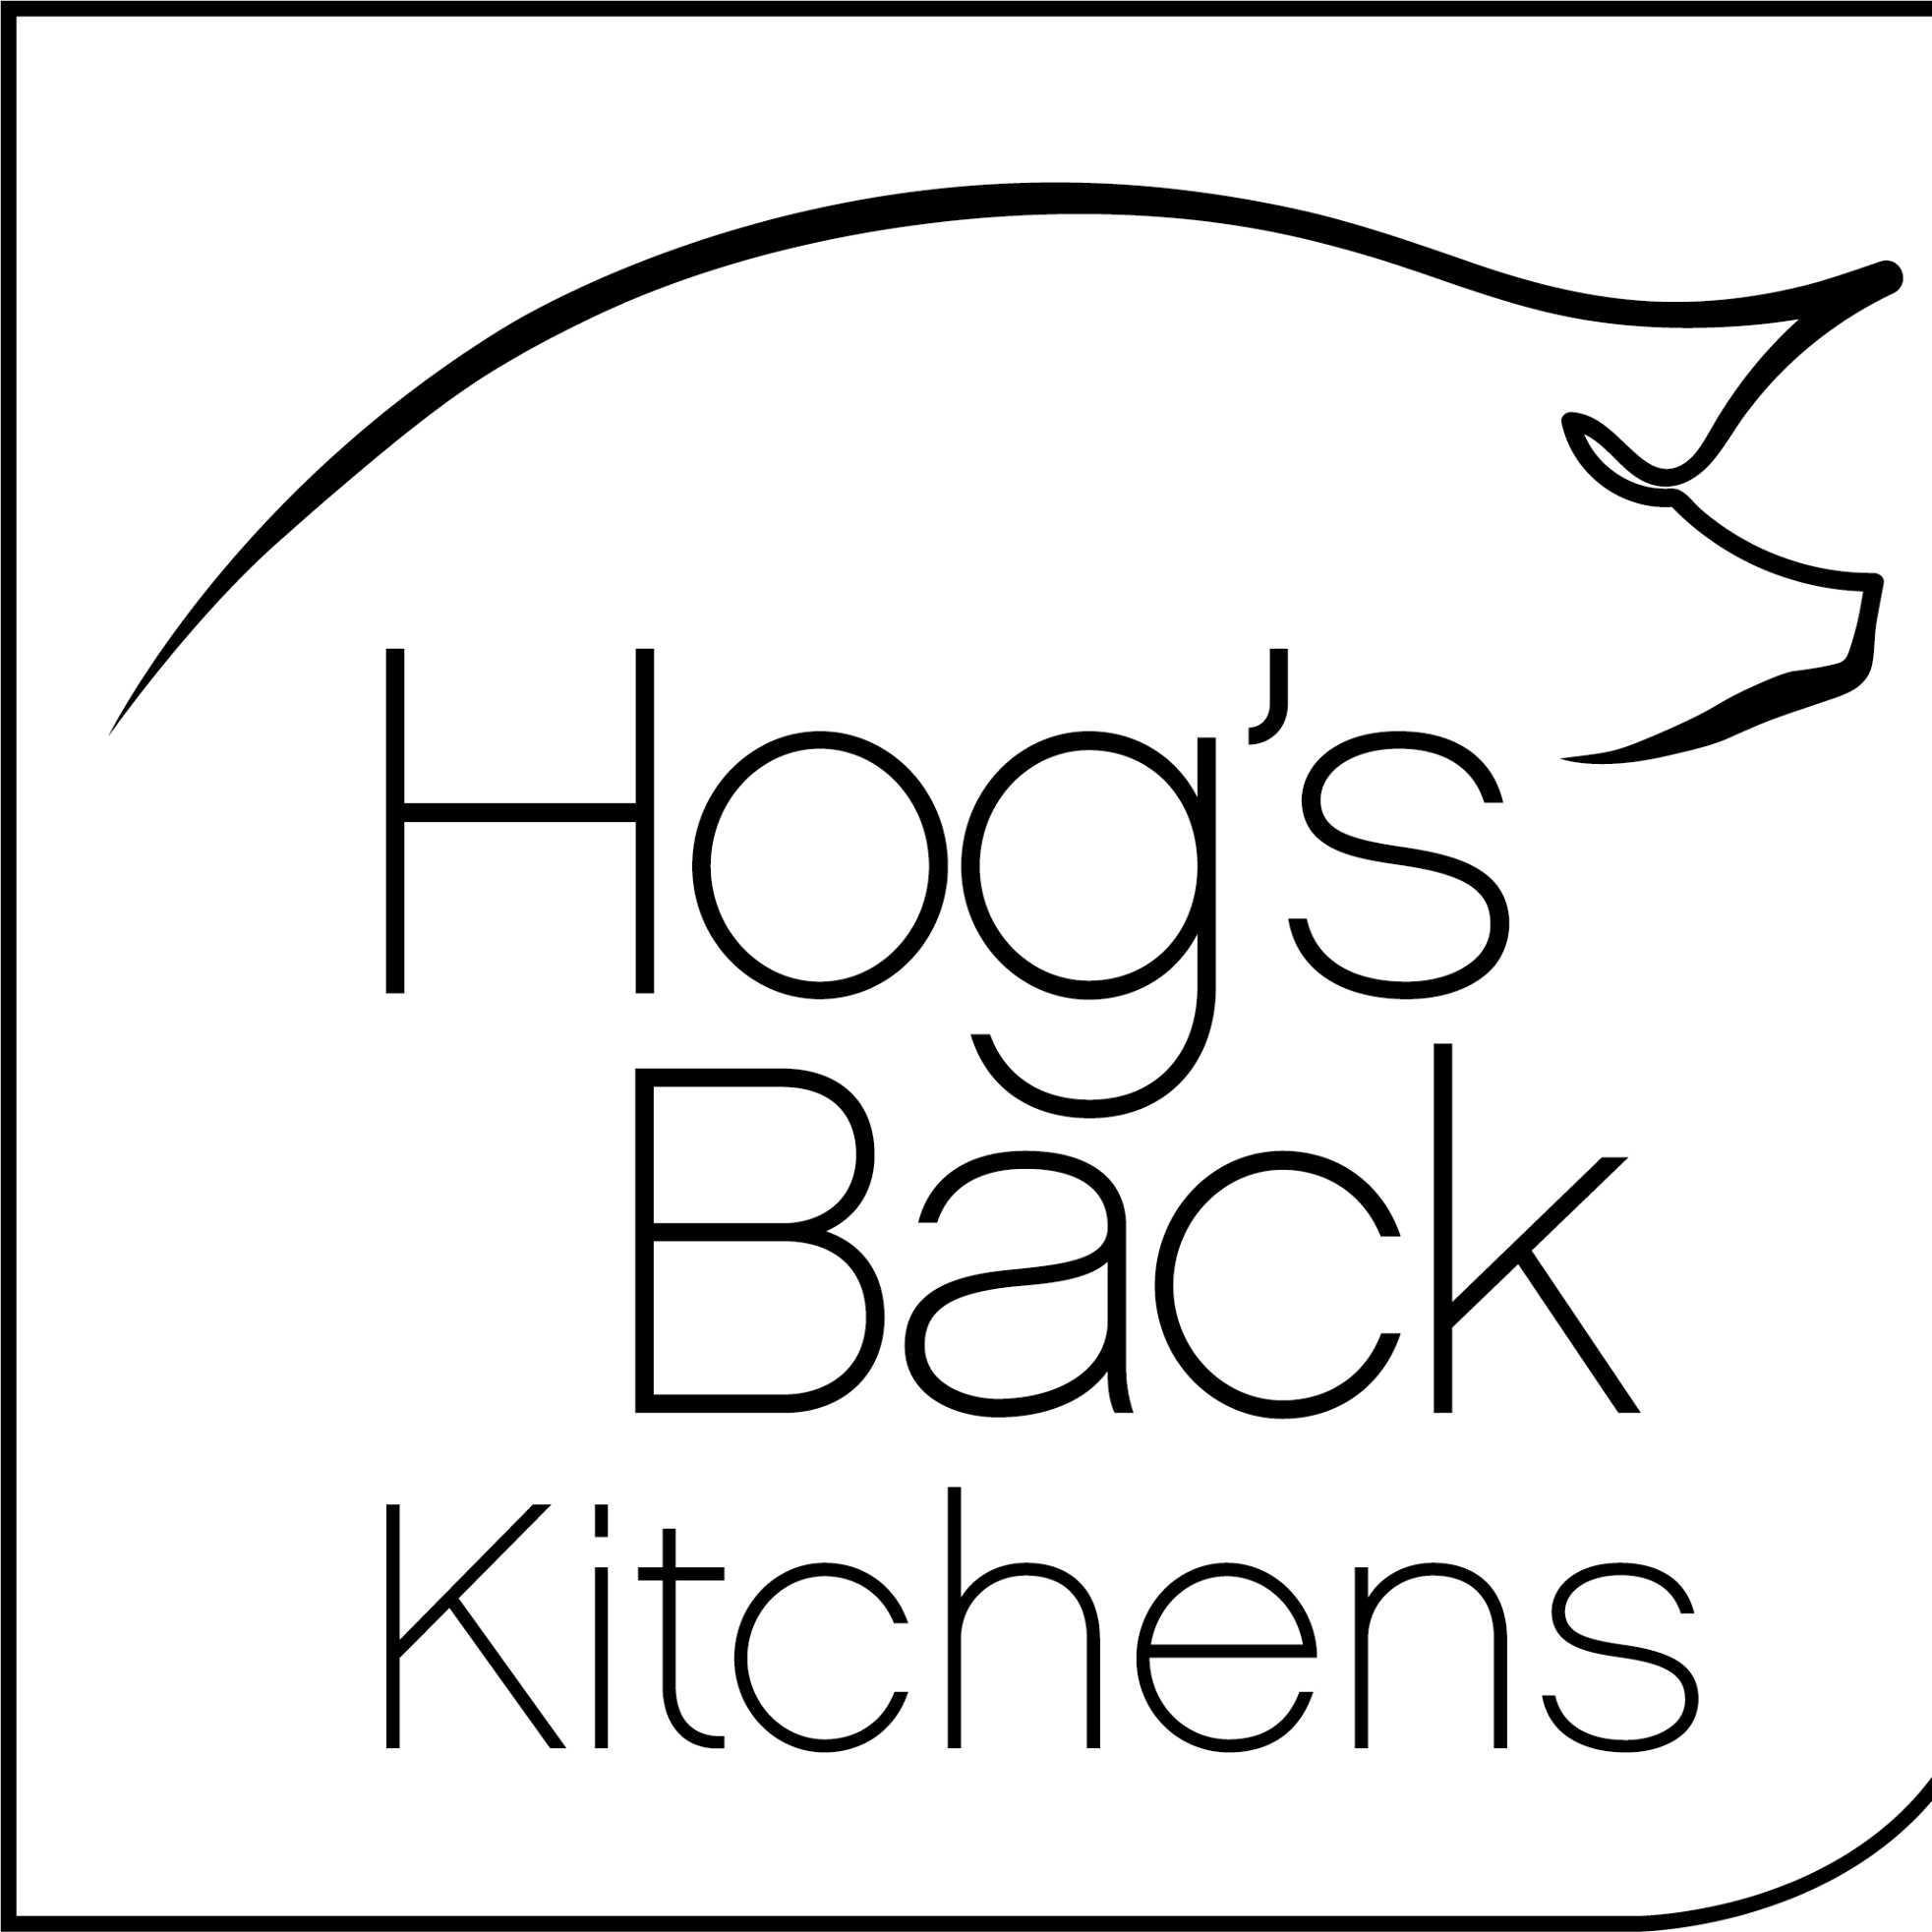 Hog's Back Kitchens